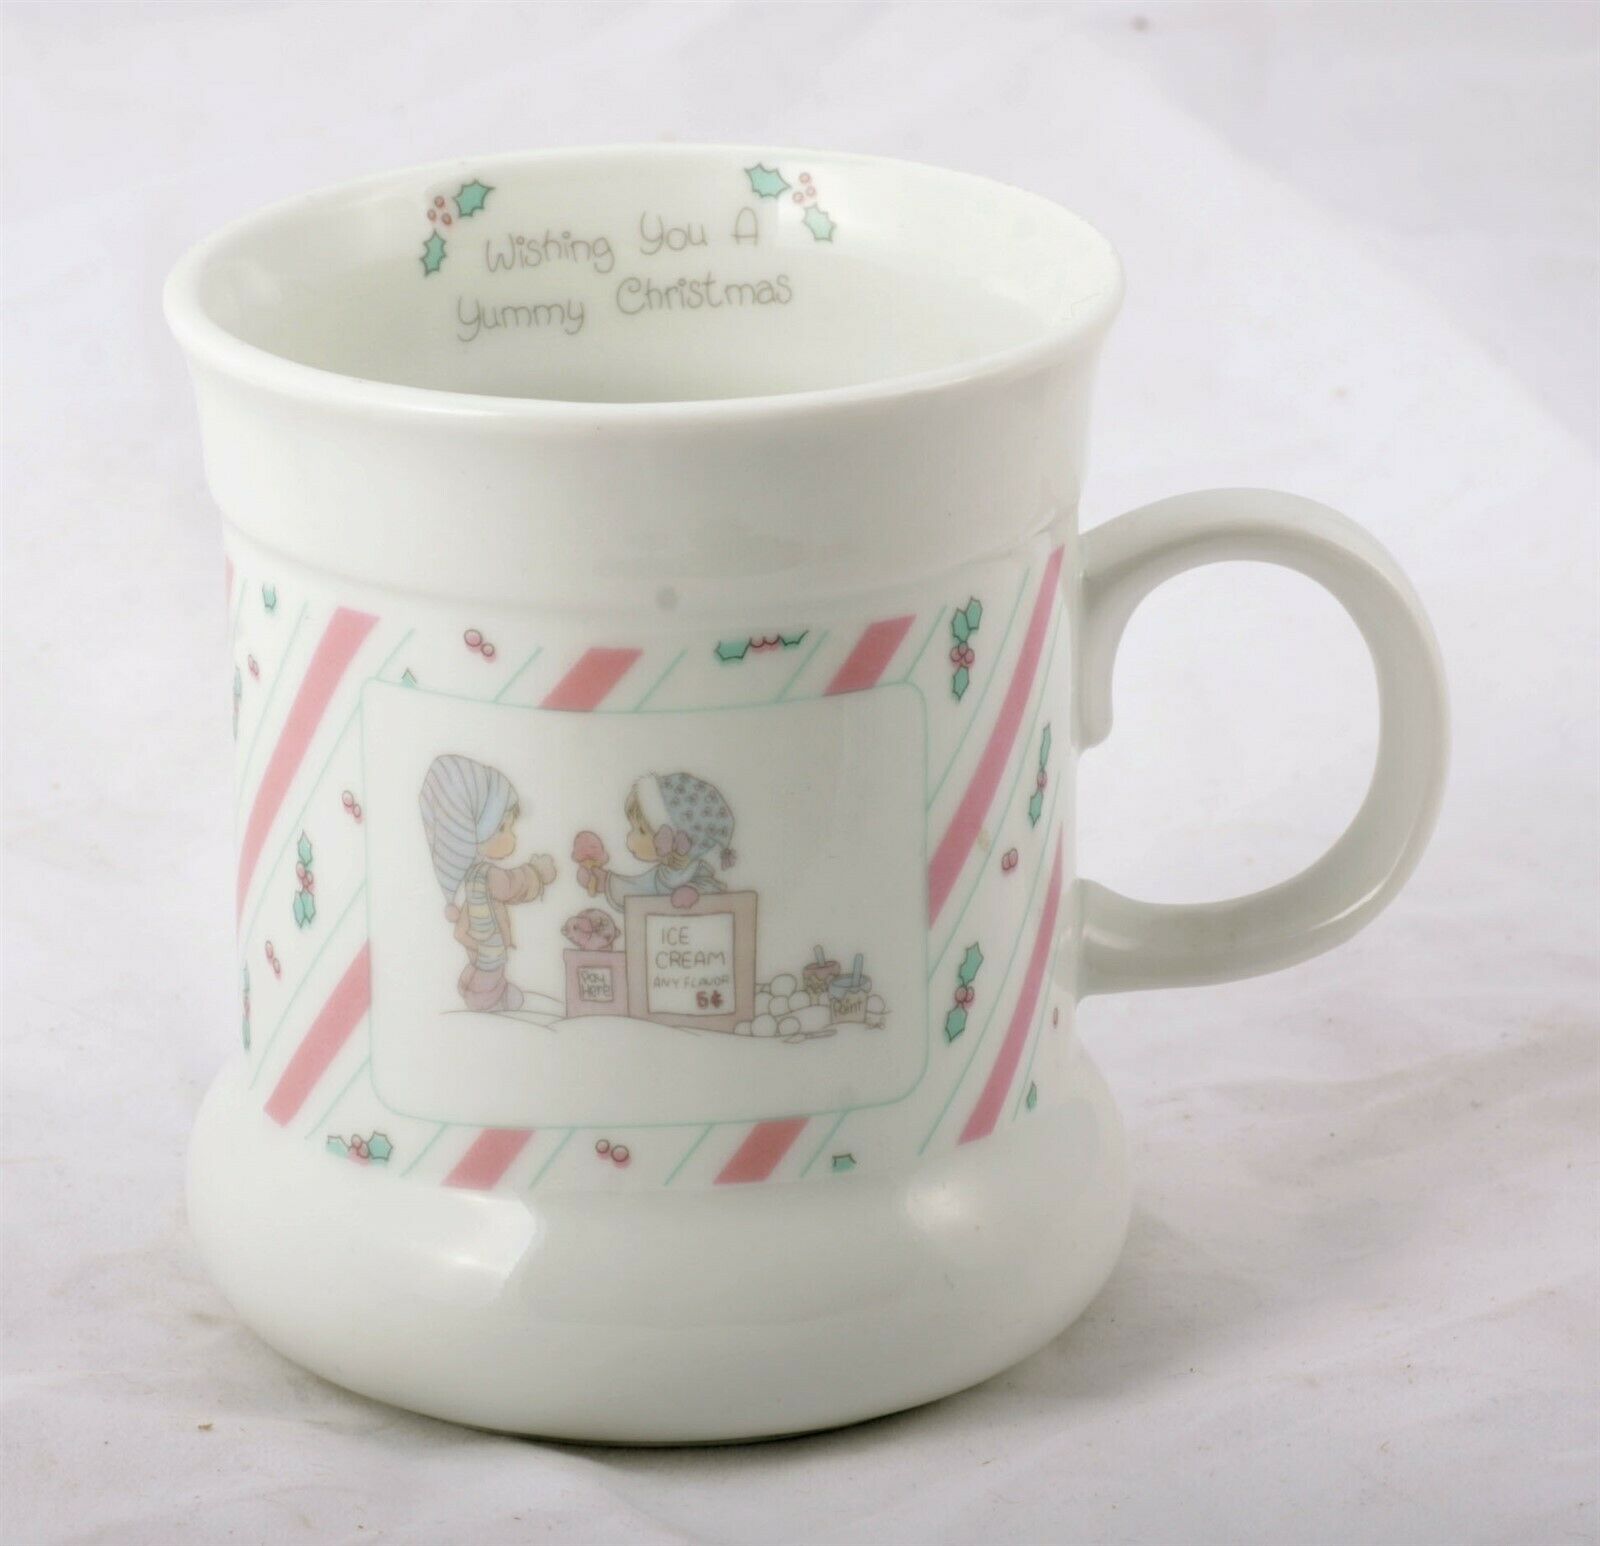 Precious Moments "Wishing You A Yummy Christmas" Collectible Coffee Mug 1989 - $6.50